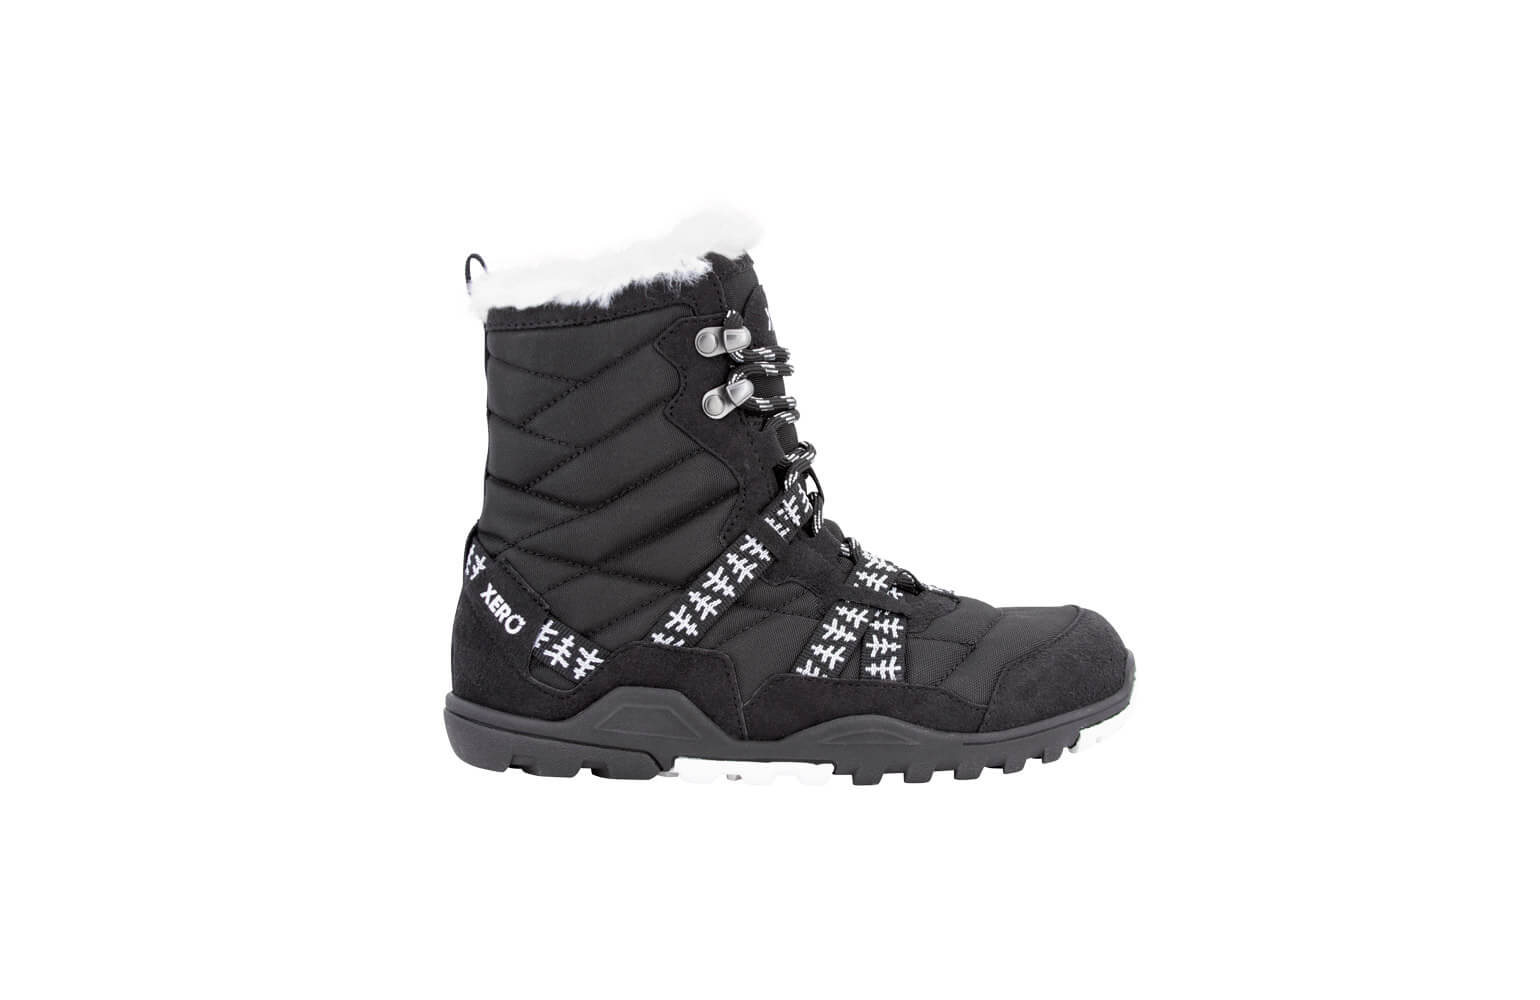 Xero Shoes Alpine Men's Snow Boot Waterproof Insulated Outdoor Winter Boot